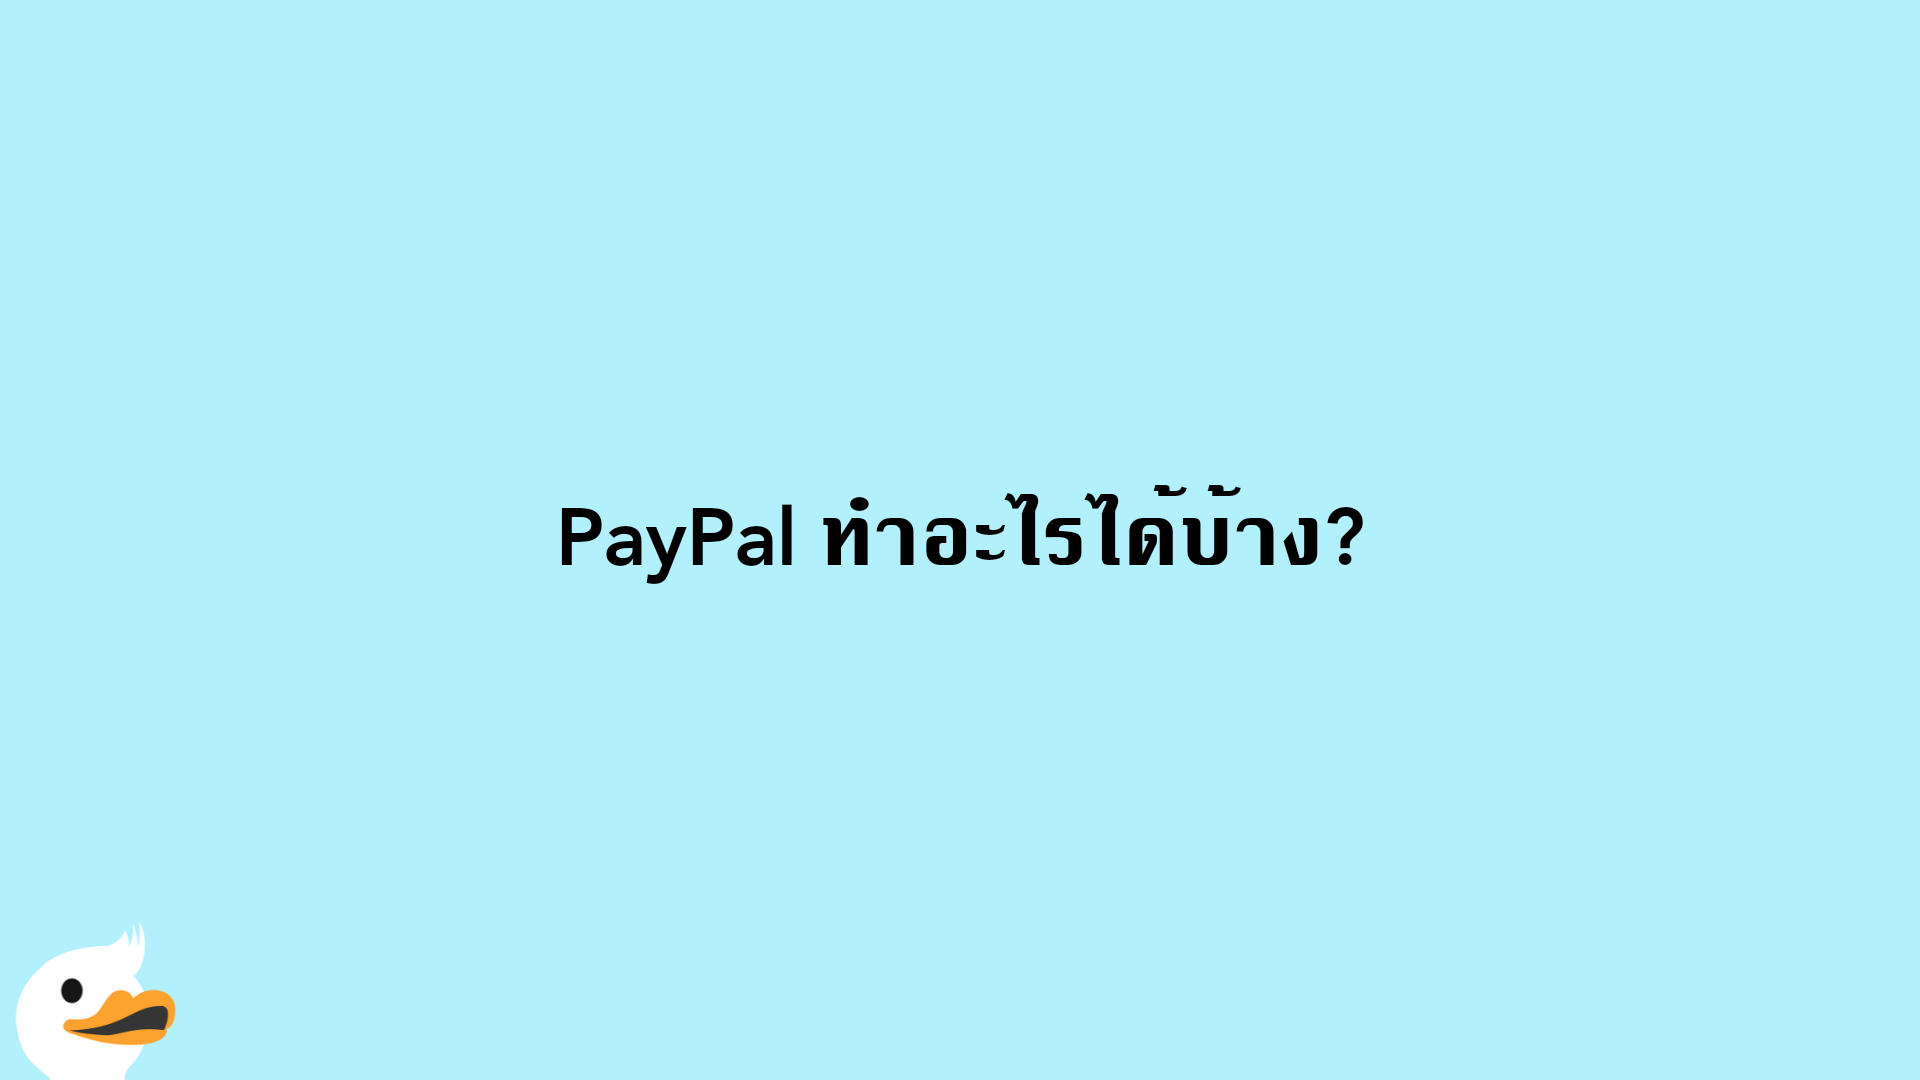 PayPal ทำอะไรได้บ้าง?